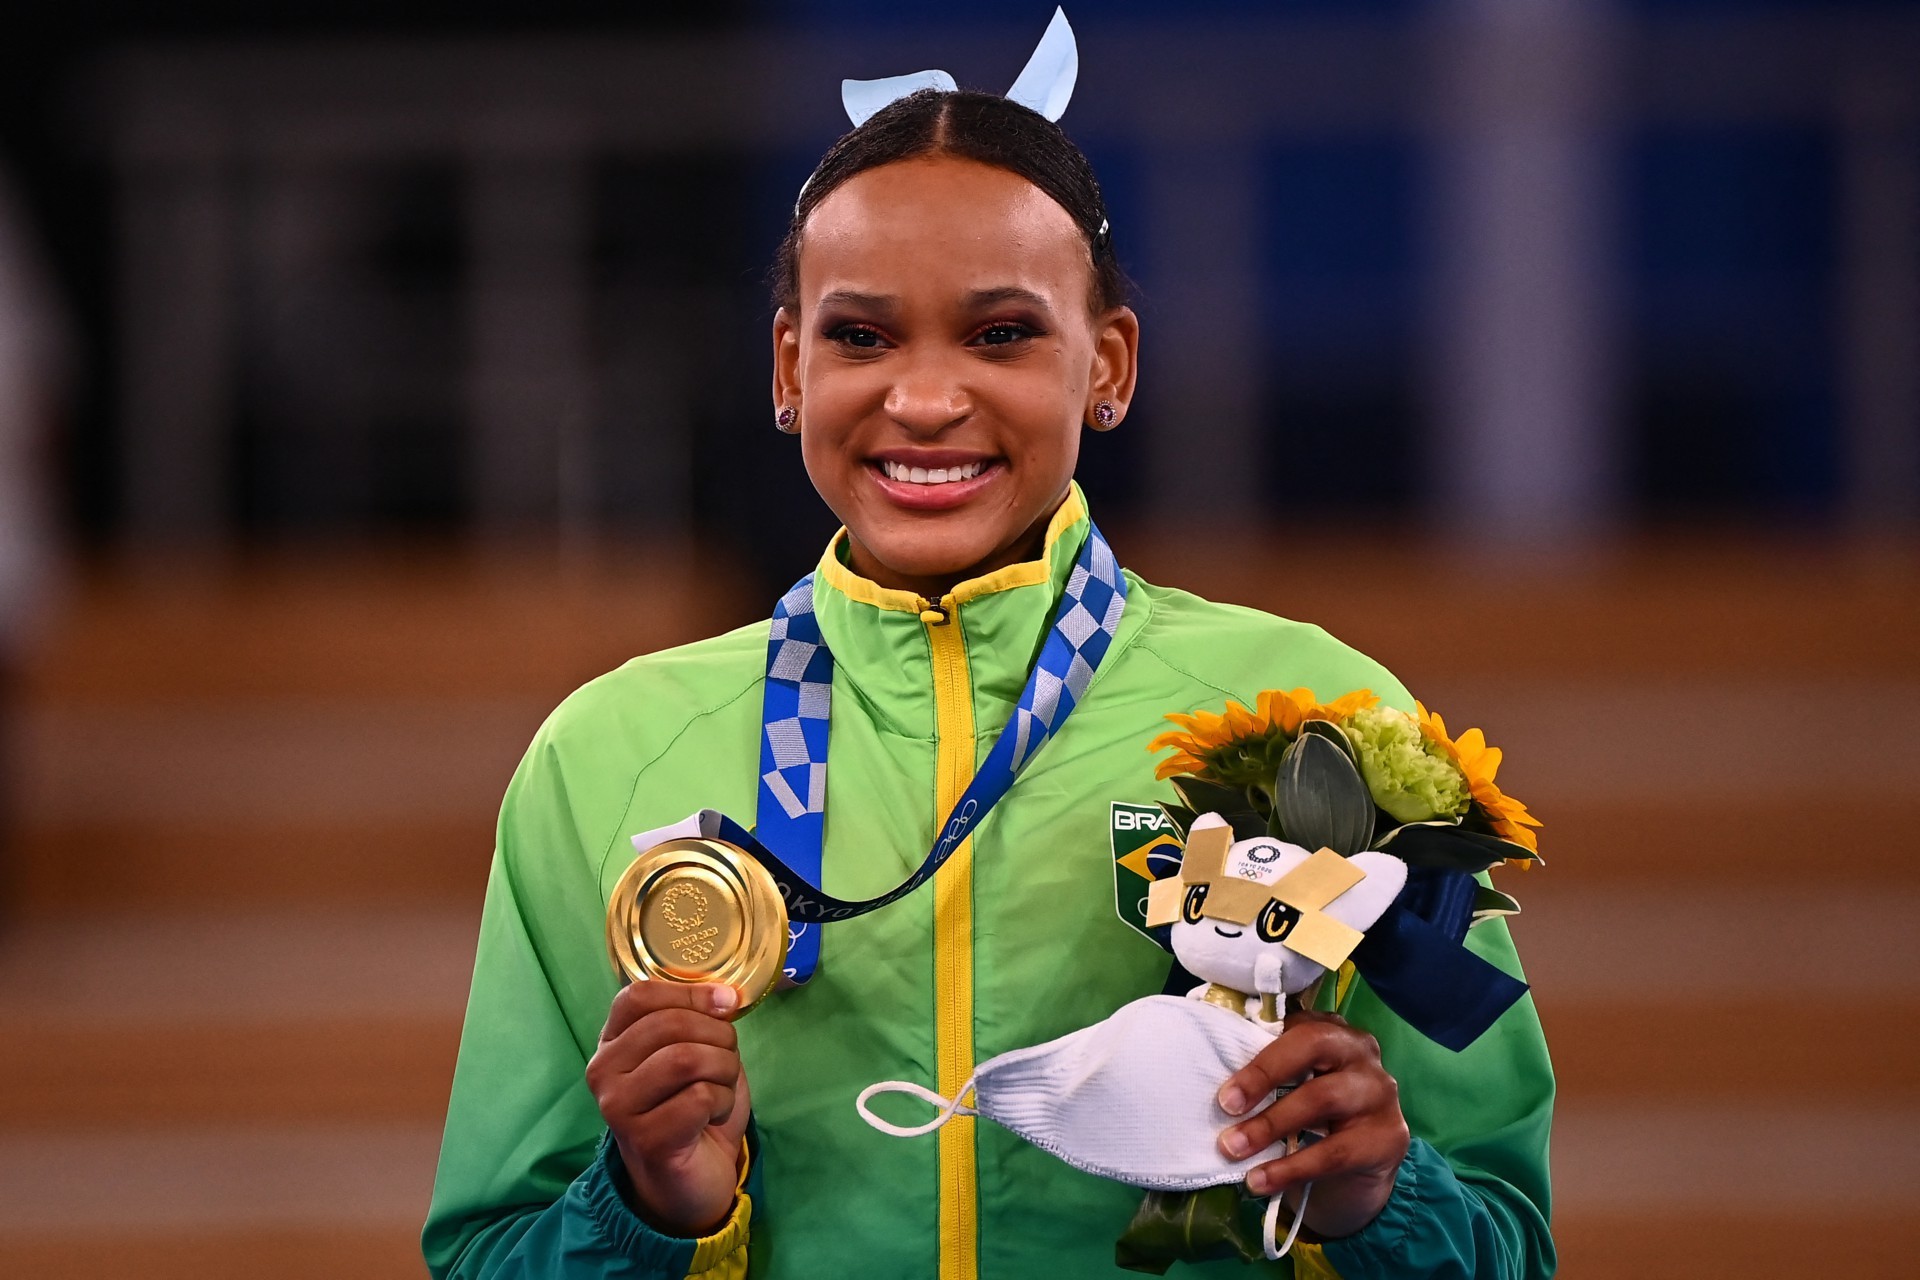 Flavinha é prata no individual geral; Brasil vai ao pódio no salto